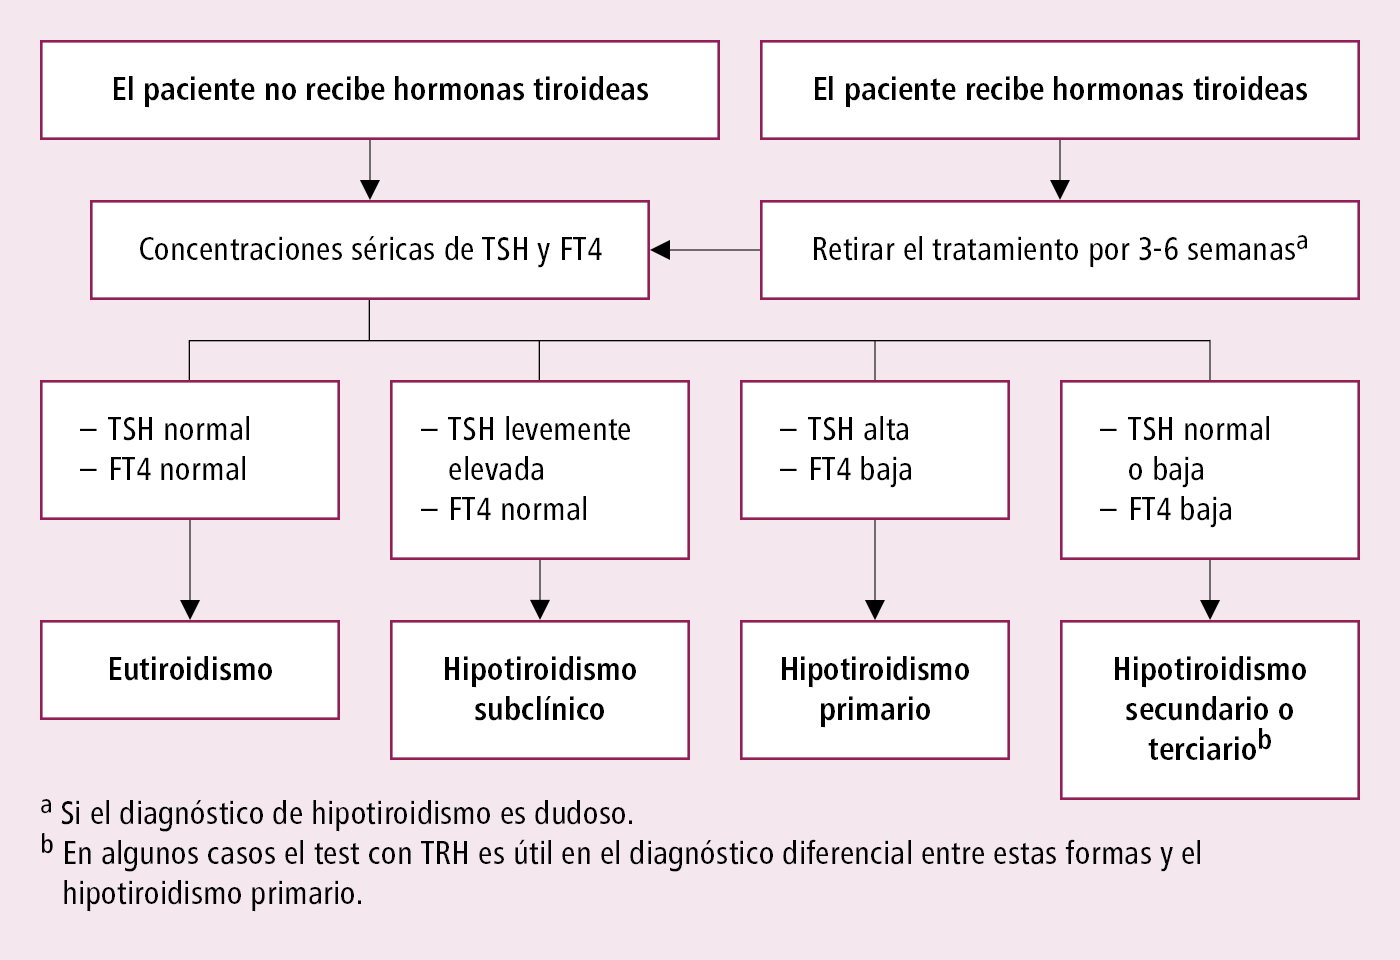    Fig. 9.1-1.  Algoritmo diagnóstico del hipotiroidismo basado en los niveles de TSH y FT4 